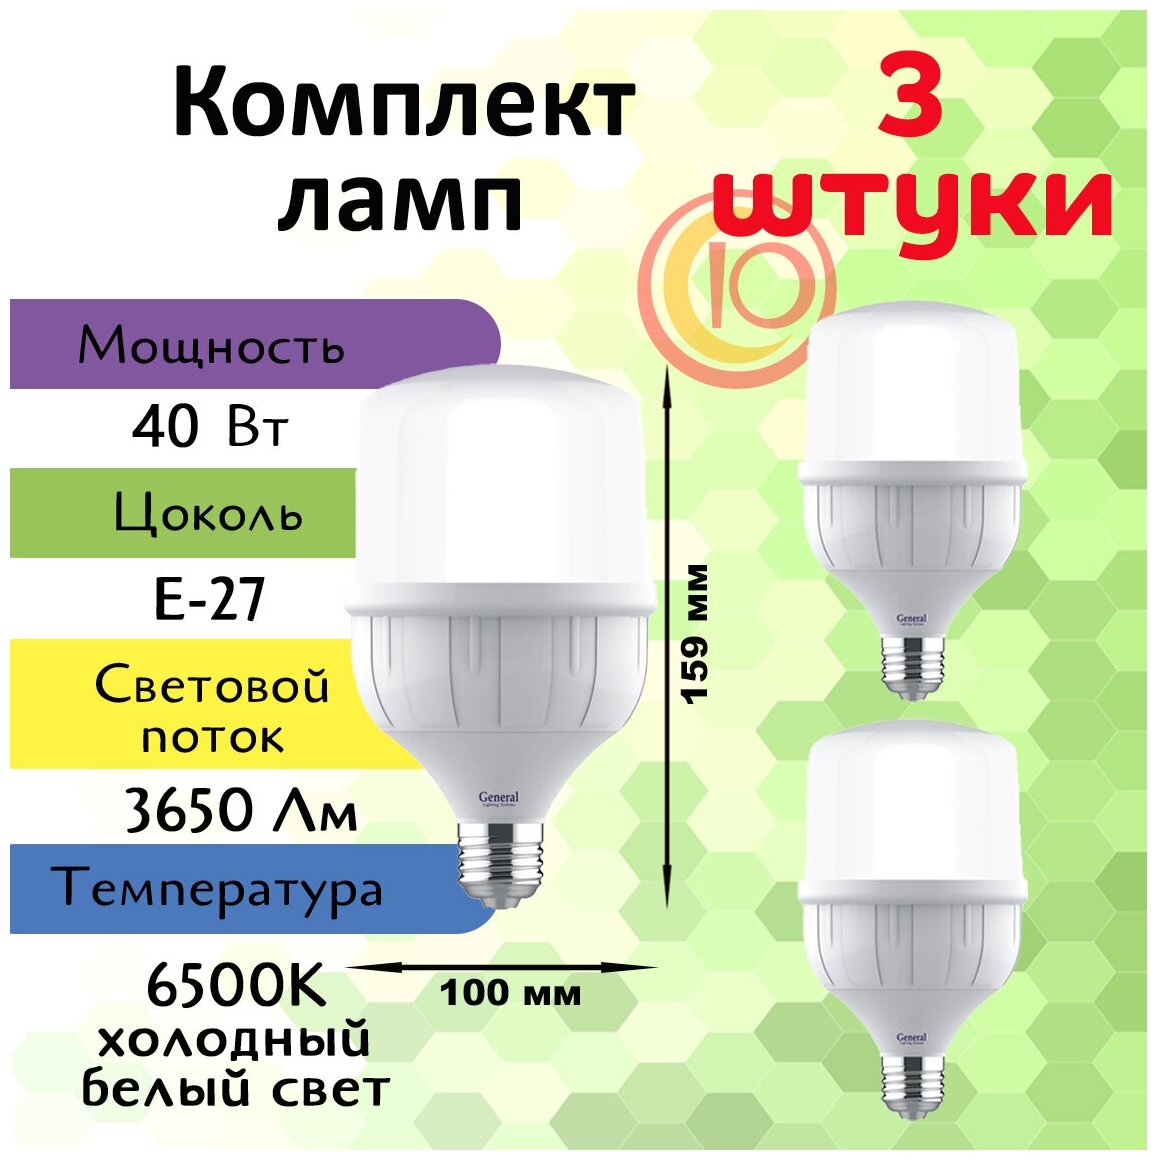 General, Лампа светодиодная, Комплект из 3 шт., 40 Вт, Цоколь E27, 6500К, Форма лампы Бочонок